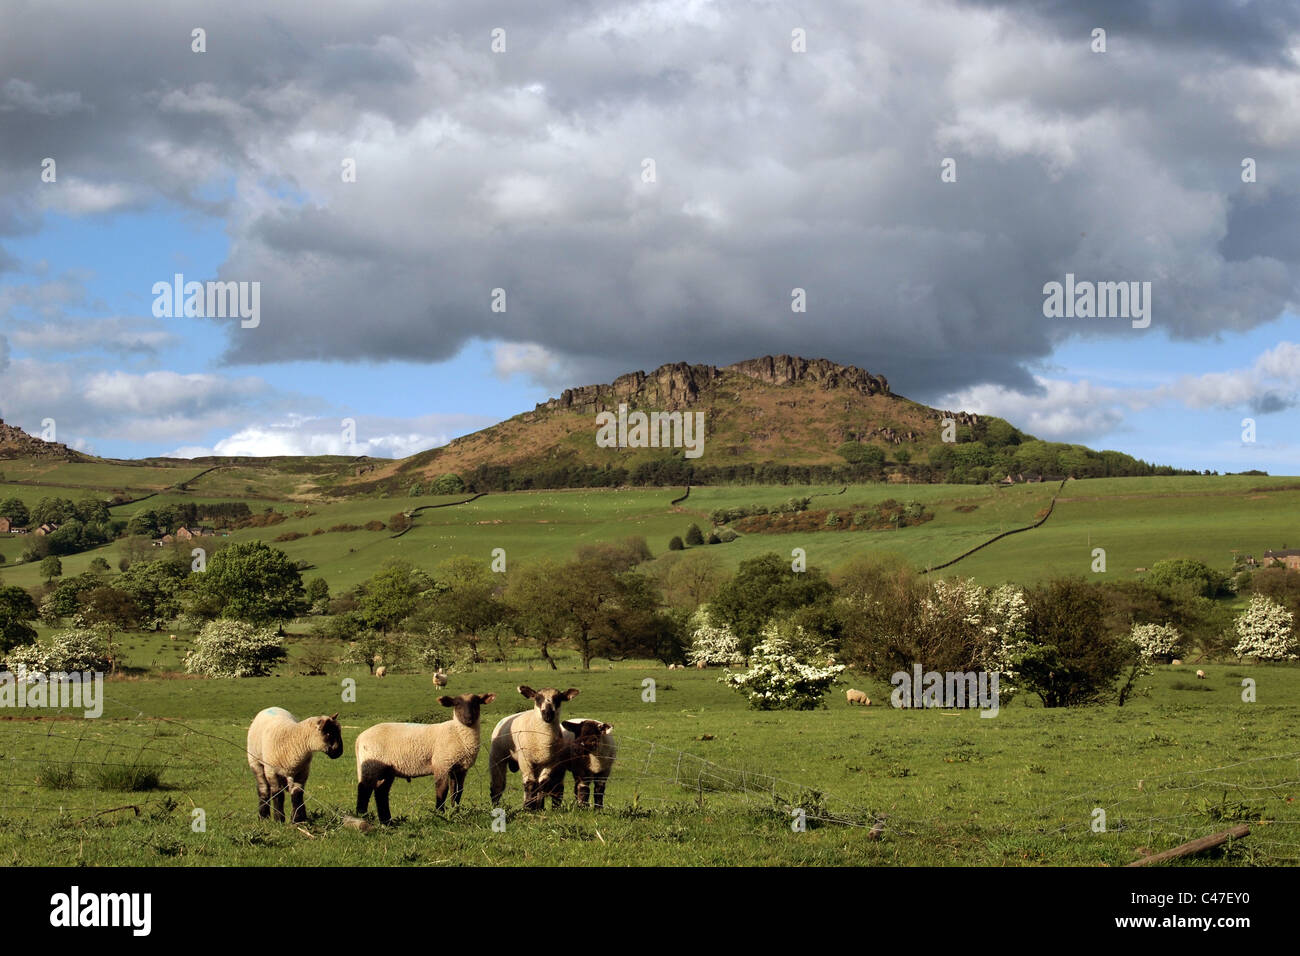 Hen Cloud dans les blattes, pierre meulière rocheux imprenable dans le Staffordshire Moorlands. Peak District. L'Angleterre, Grande-Bretagne Banque D'Images